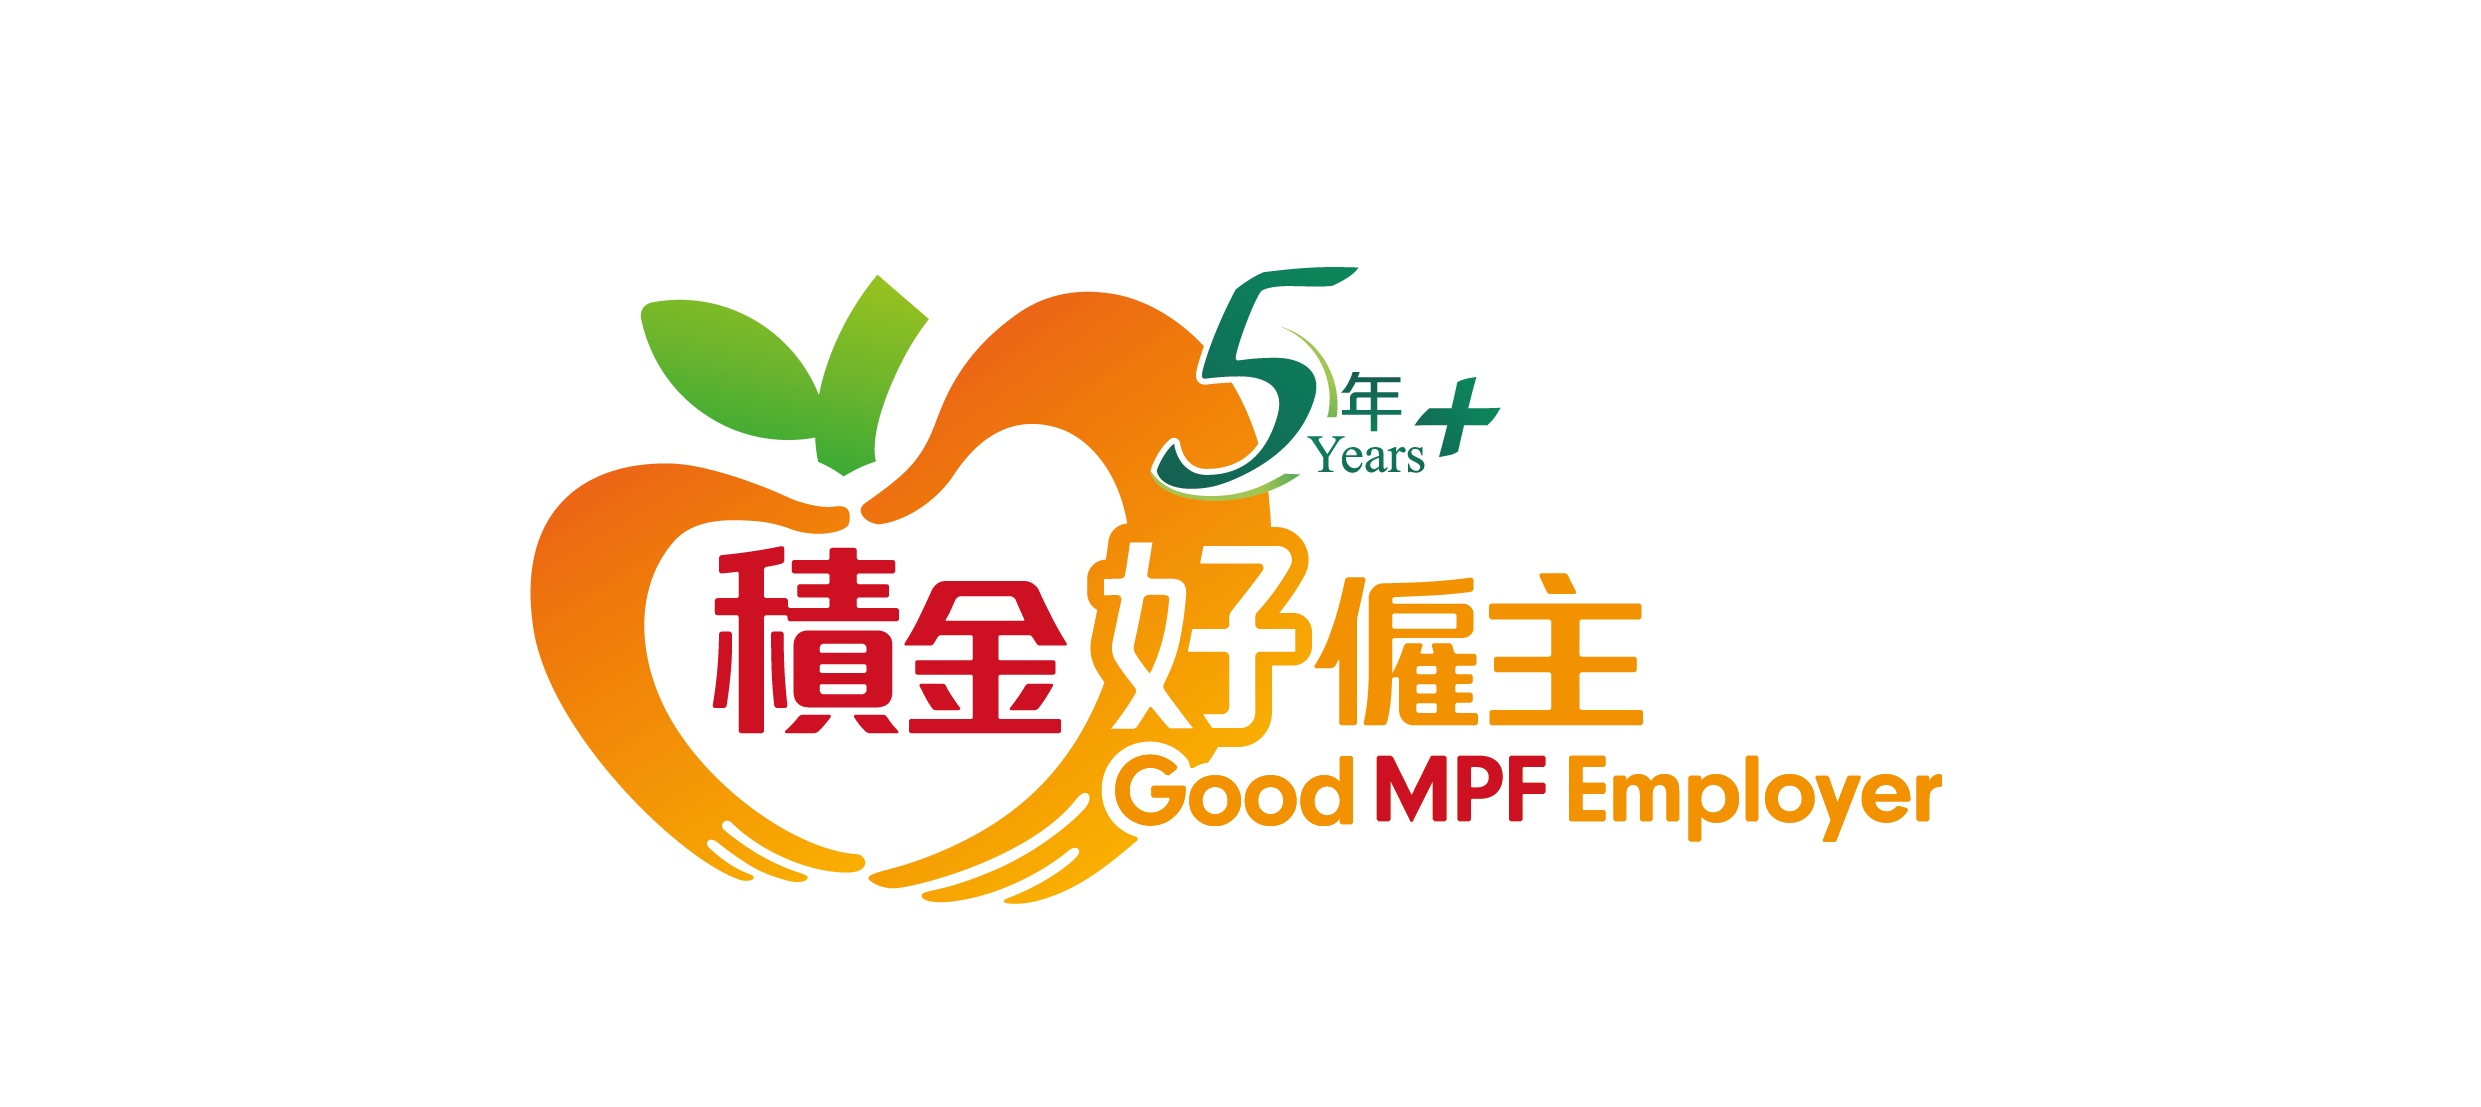 mpf employer